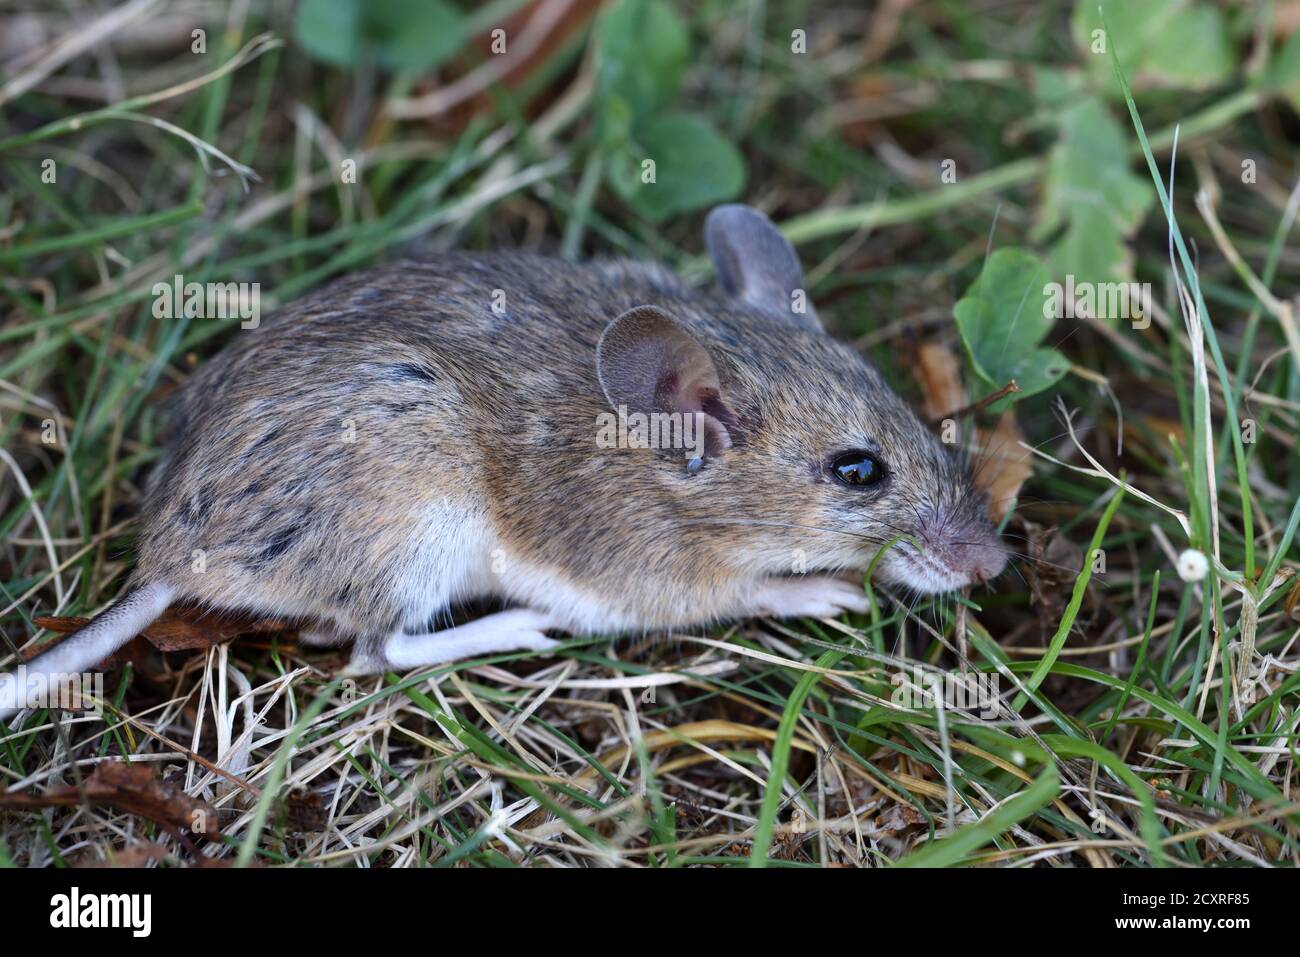 Souris à bois, Apodemus sylvaticus, alias souris à longue queue, souris à champ commun ou souris à bois européenne Banque D'Images